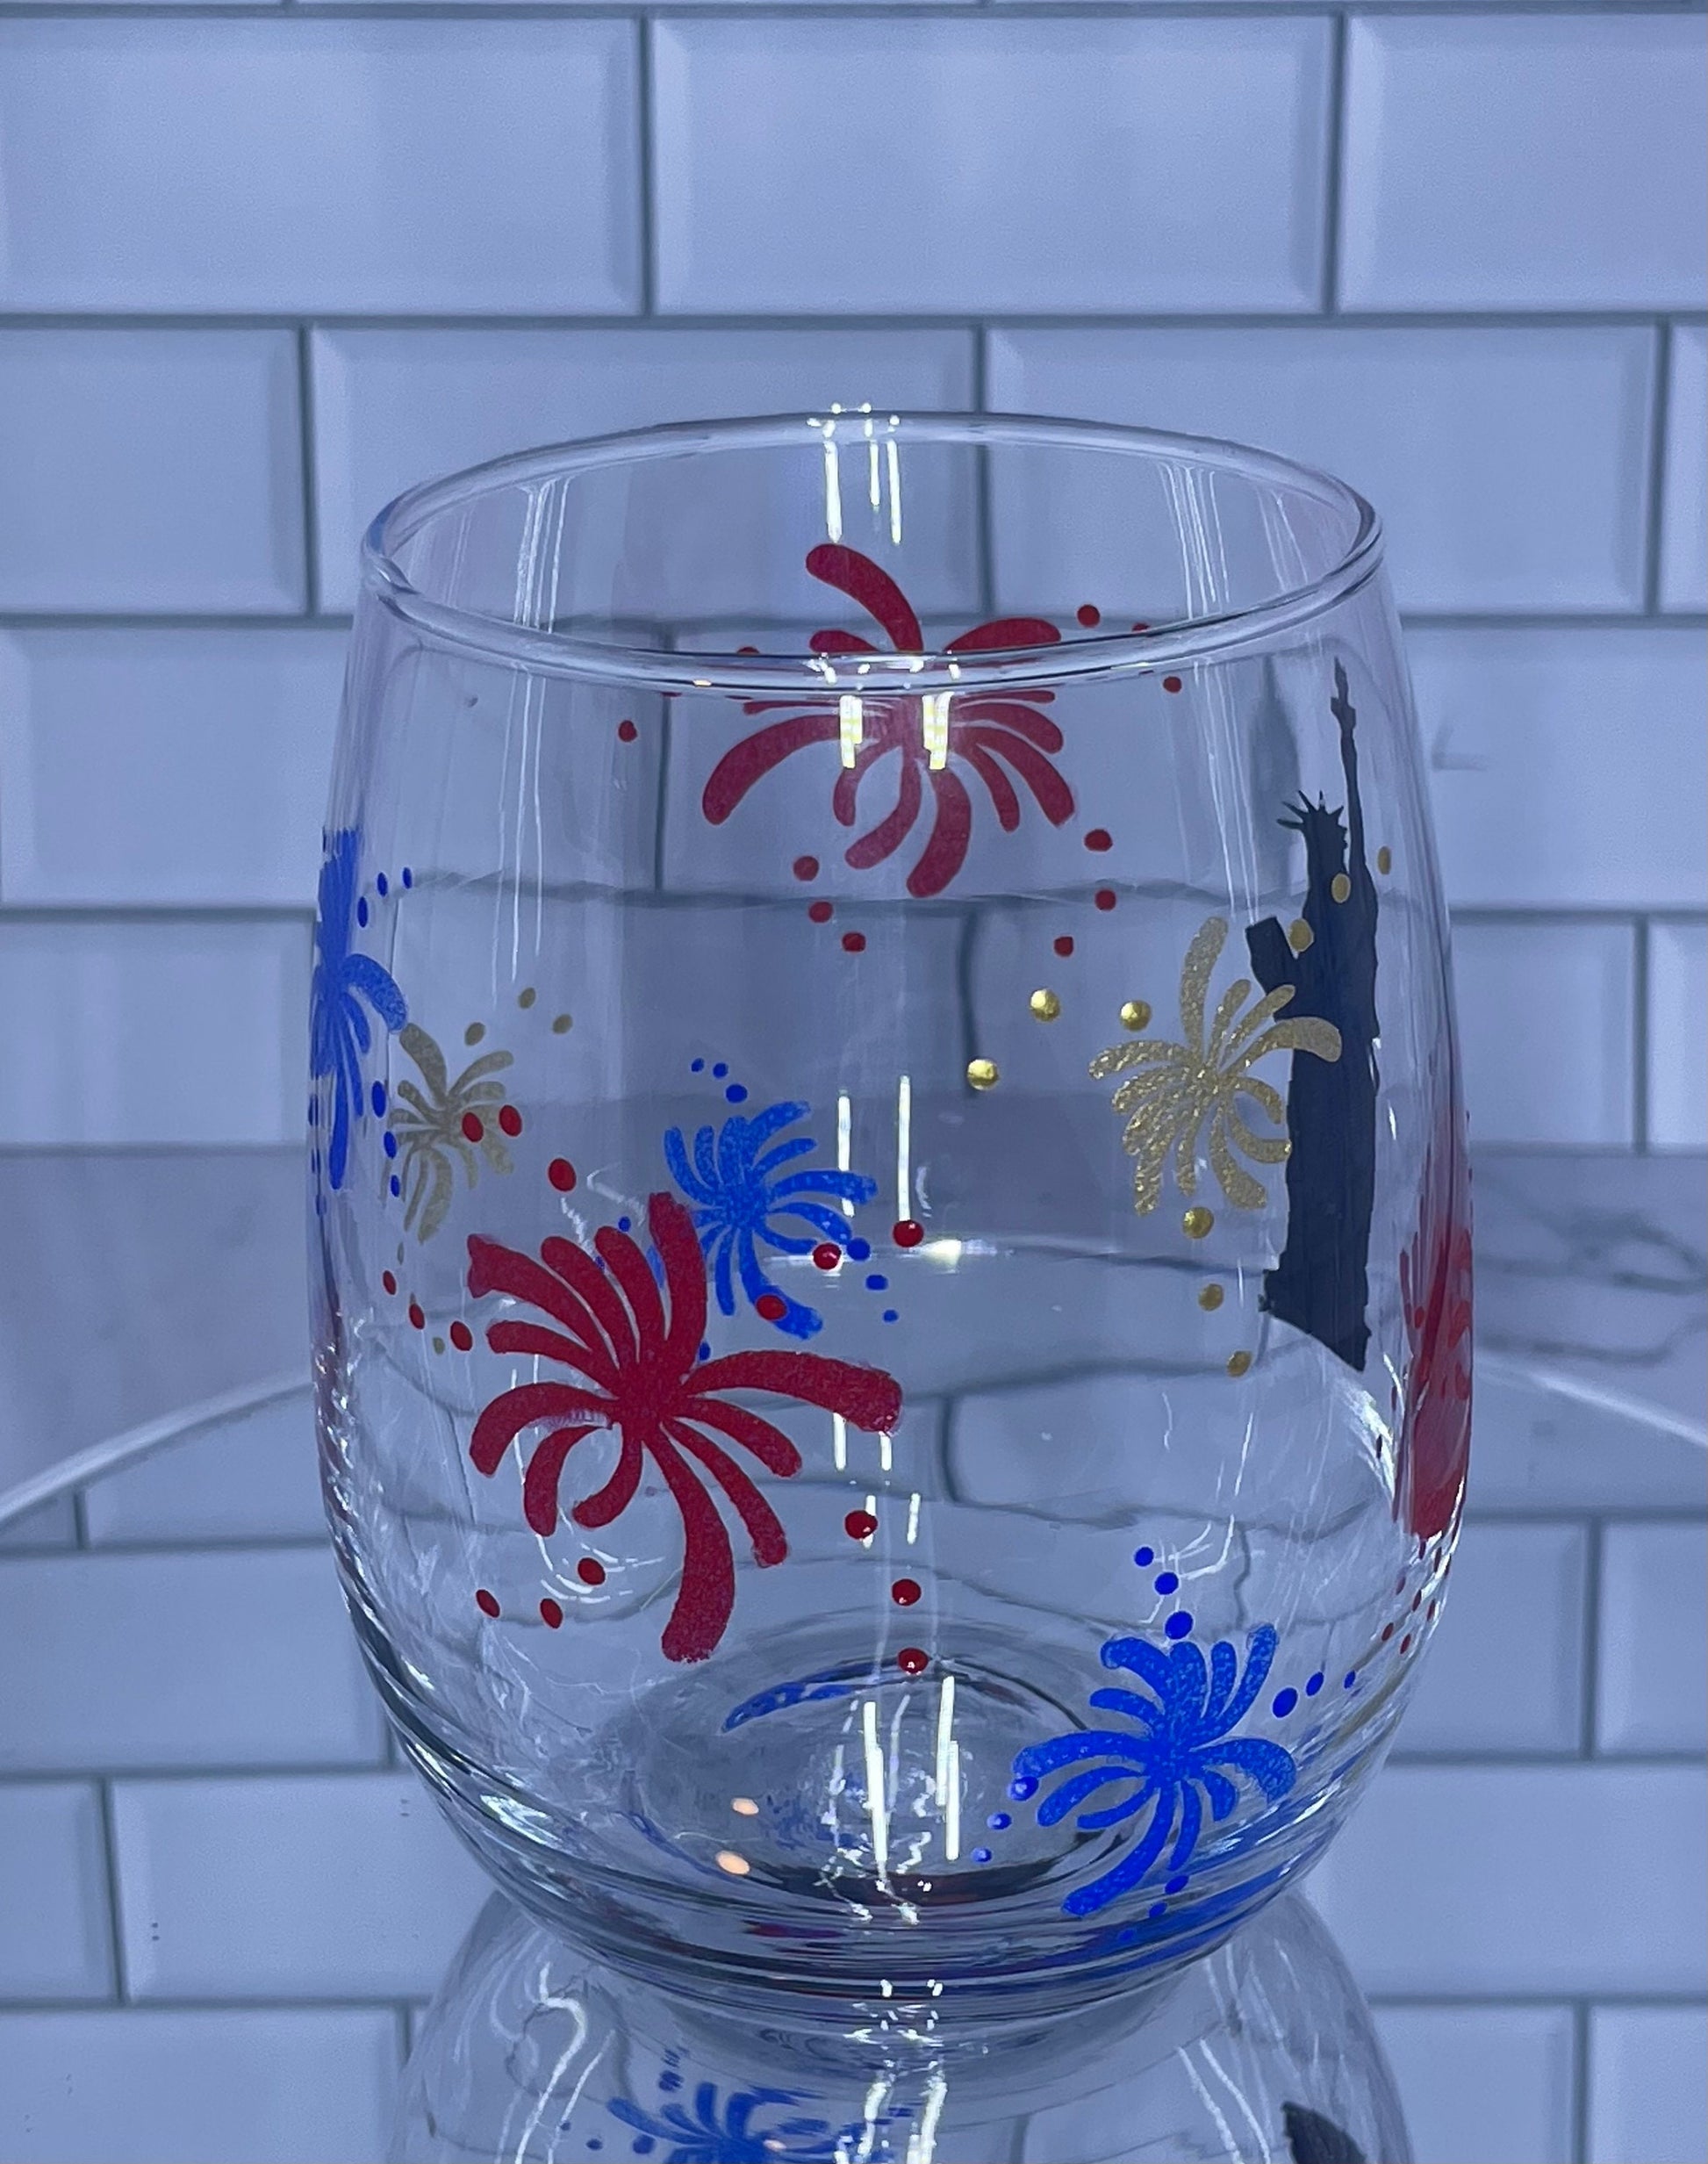 USA celebration Soap Dispenser Fireworks Red, White And Blue